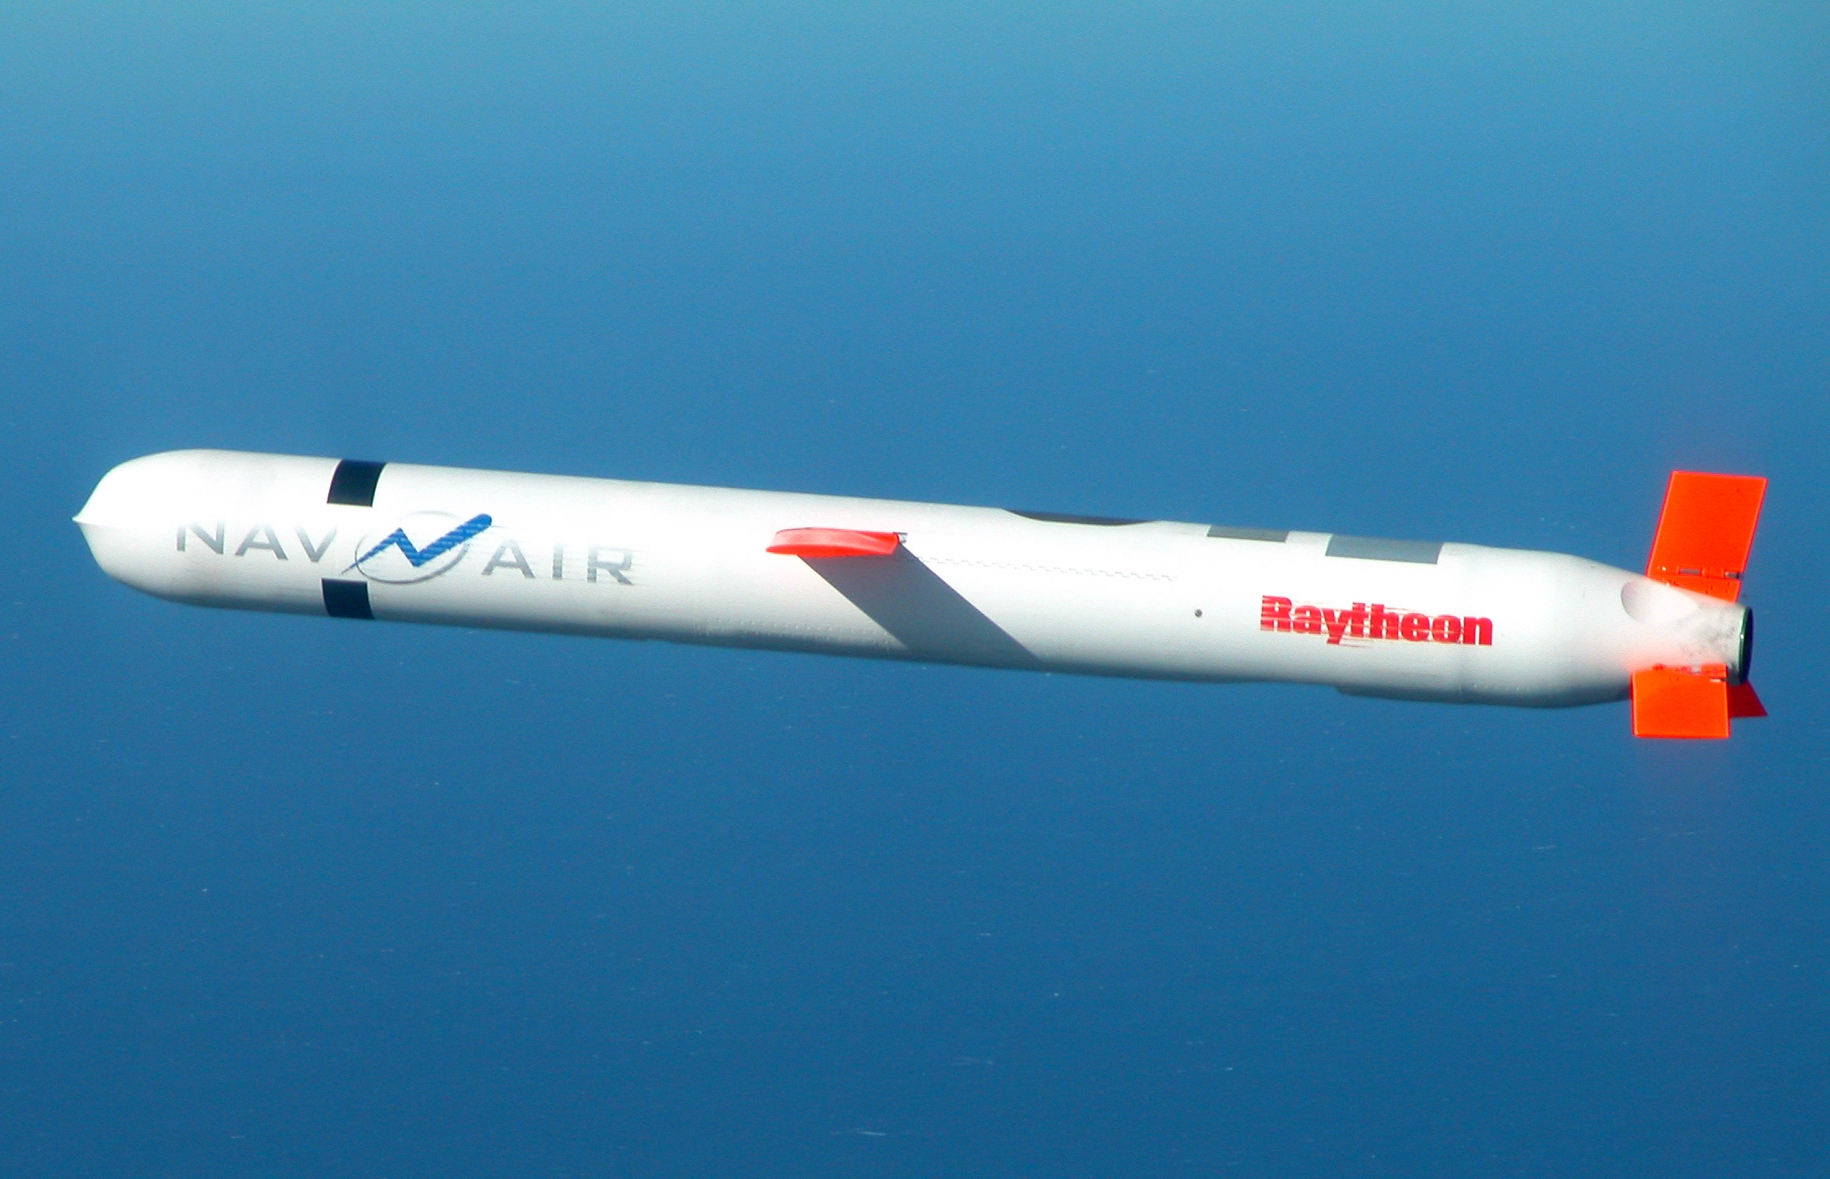 Japonia chce kupić do 500 amerykańskich rakiet Tomahawk, które mogą uderzać w cele na odległość do 1850 km - wartość kontraktu może przekroczyć 1 mld USD